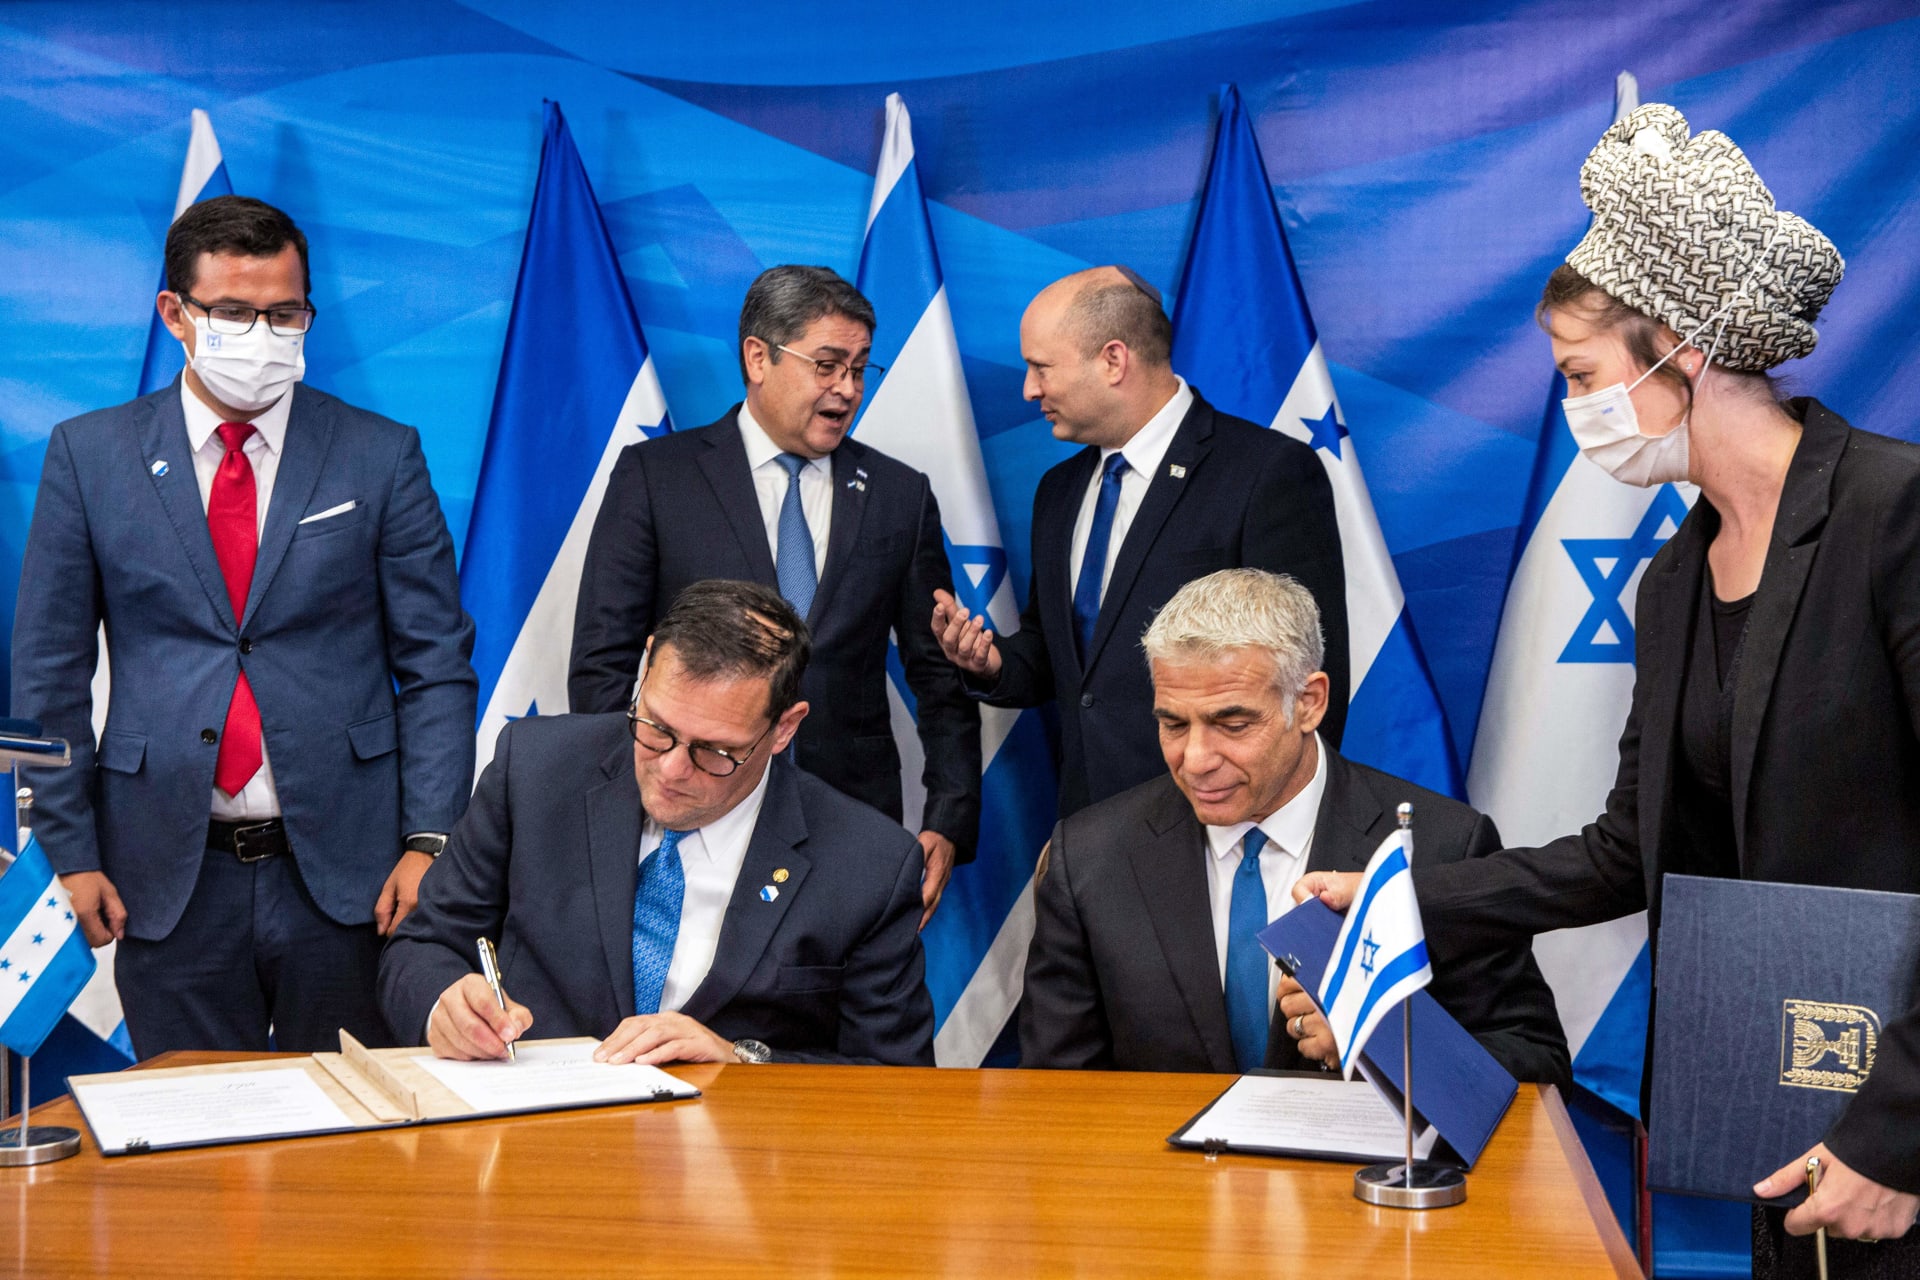 وزير الخارجية الإسرائيلي يائير لابيد (أسفل اليمين) ووزير خارجية هندوراس ليساندرو (أسفل اليسار) يوقعان اتفاقيات ثنائية في مكتب رئيس الوزراء في القدس يوم 24 يونيو 2021